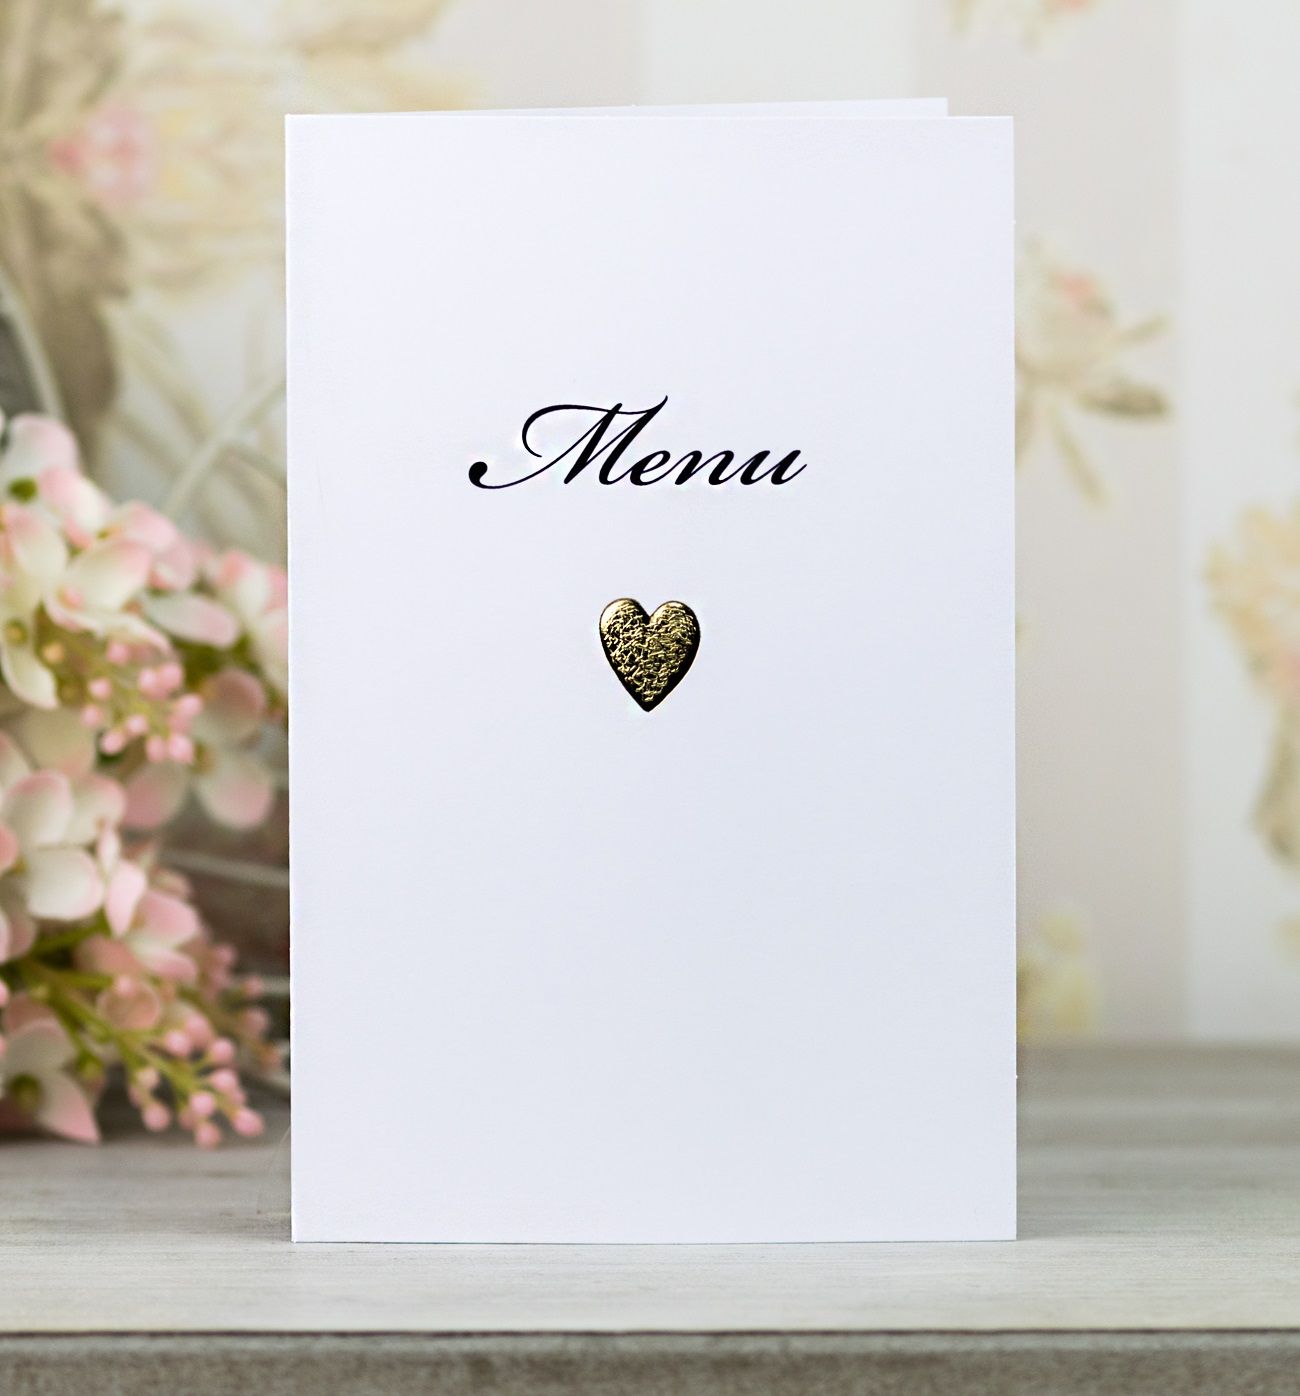 Svatební menu – dvoudílné  – otevírací – v bílé barvě, motiv srdíčka je vytvořen zlatou reliéfní ražbou.